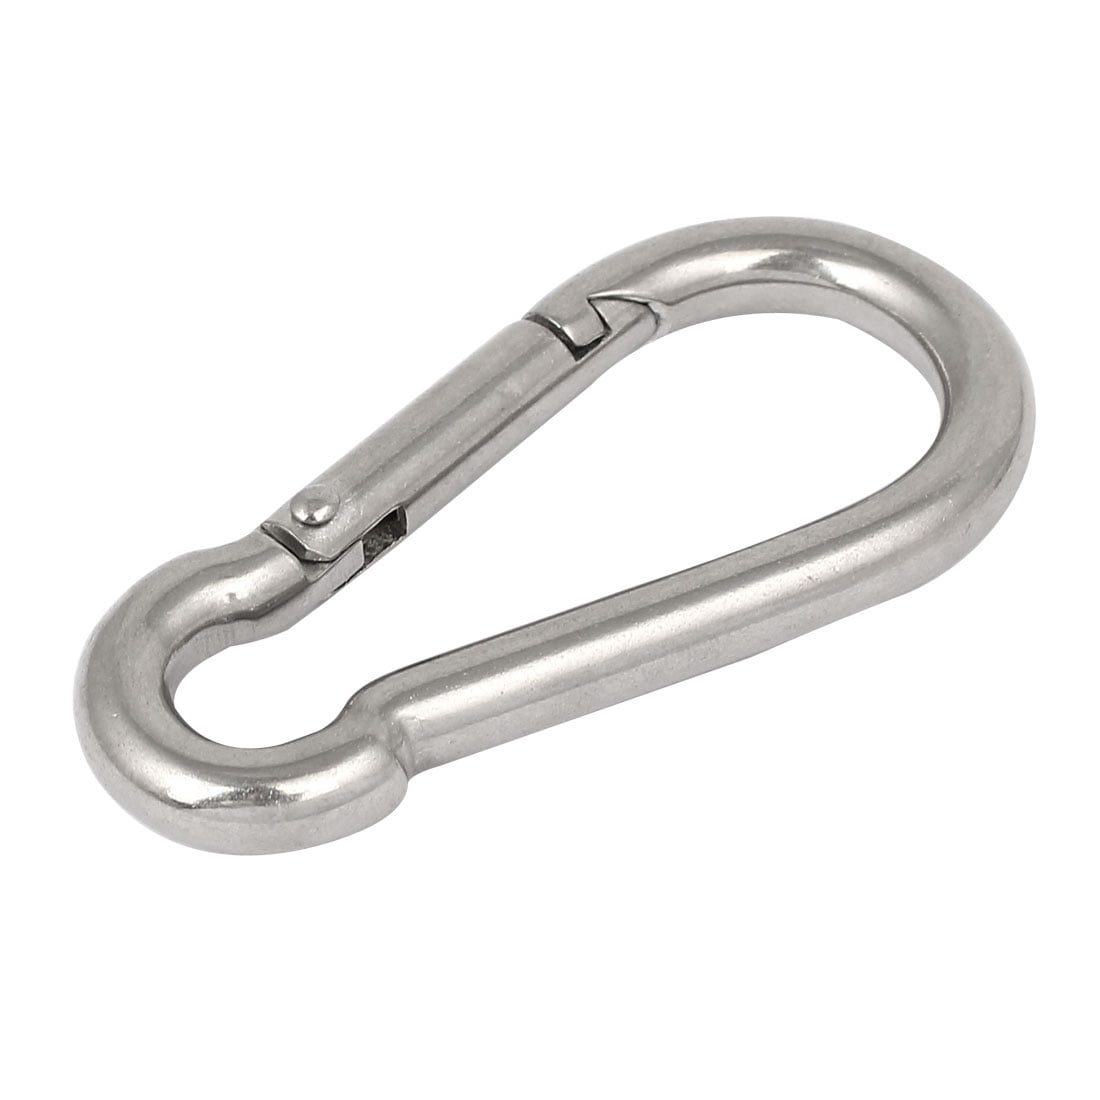 304 Stainless Steel Spring Carabiner Snap Hook Keychain Quick Link Lock BuckD$N 